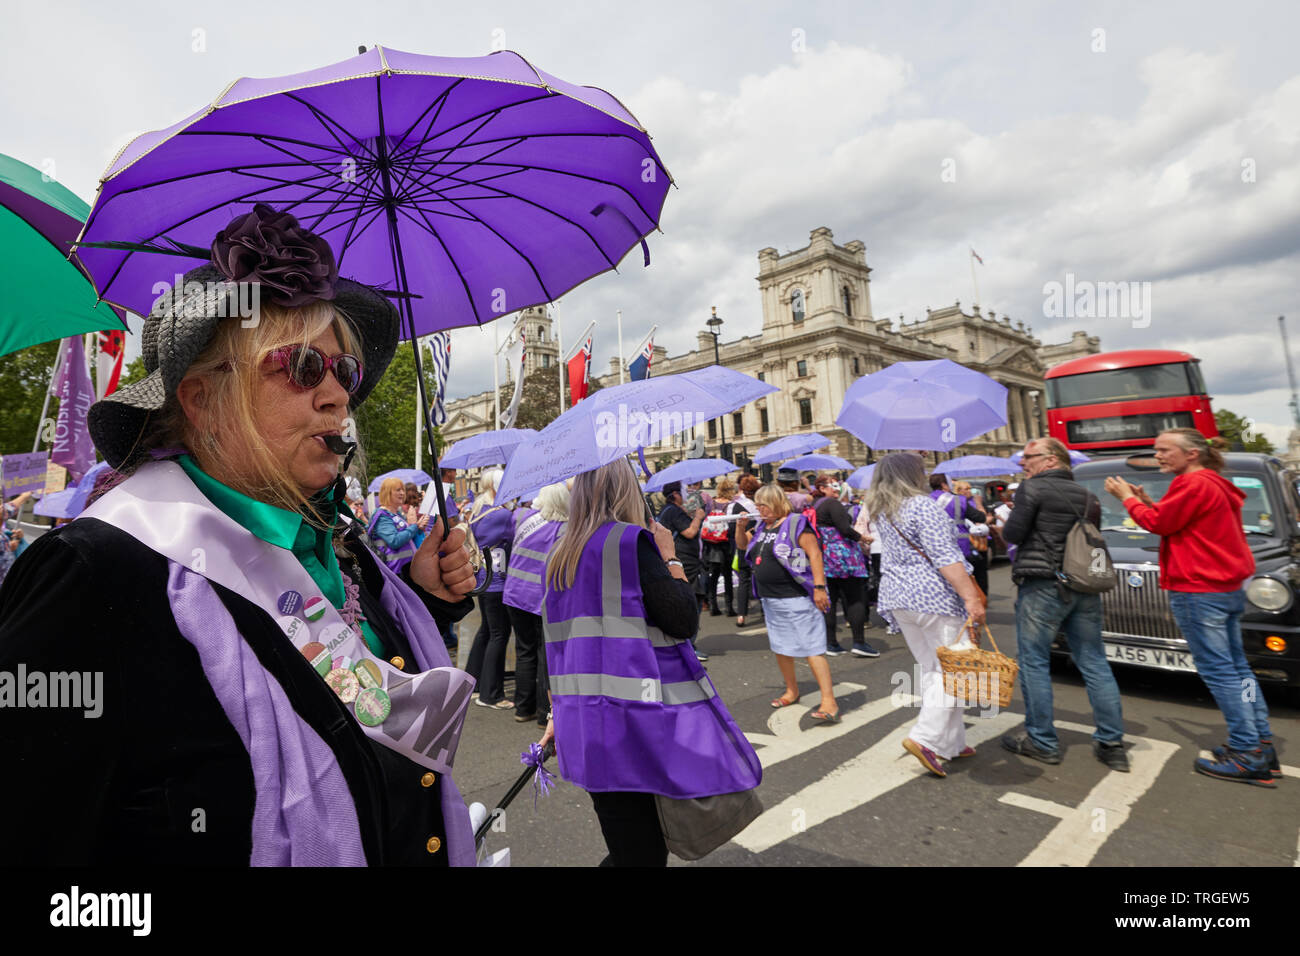 London, Regno Unito - 5 giugno, 2019: WASPI manifestanti, campagne di sensibilizzazione per le pensioni delle donne a partire dagli anni cinquanta ha dimostrato in piazza del Parlamento il giorno di un controllo giurisdizionale. Foto Stock